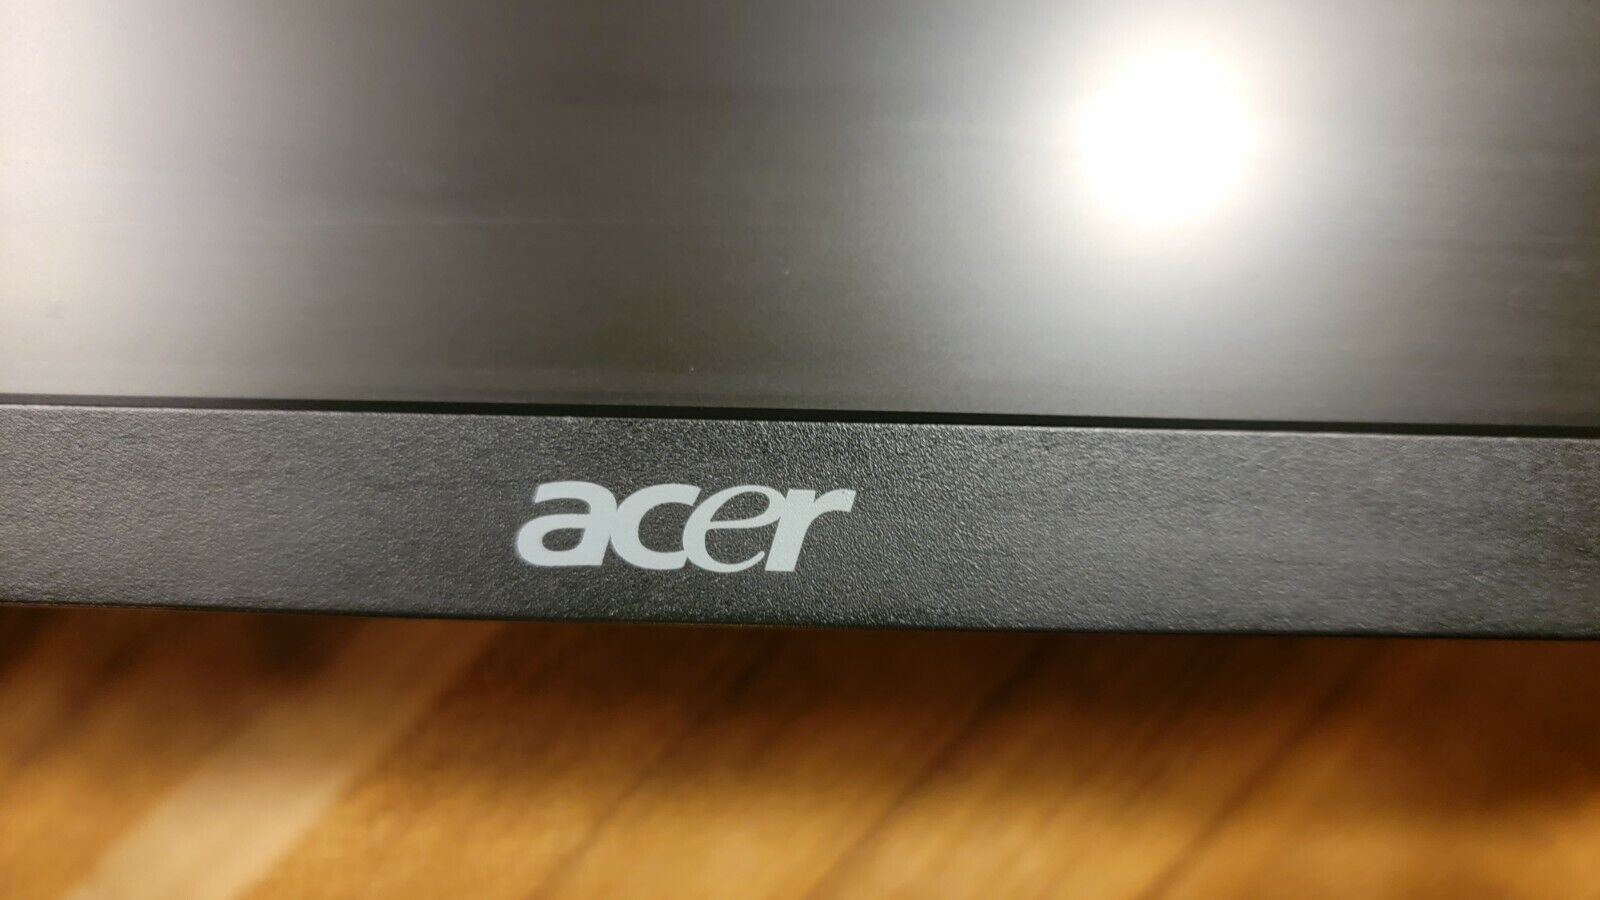 Acer B243hl bmdrz 24\